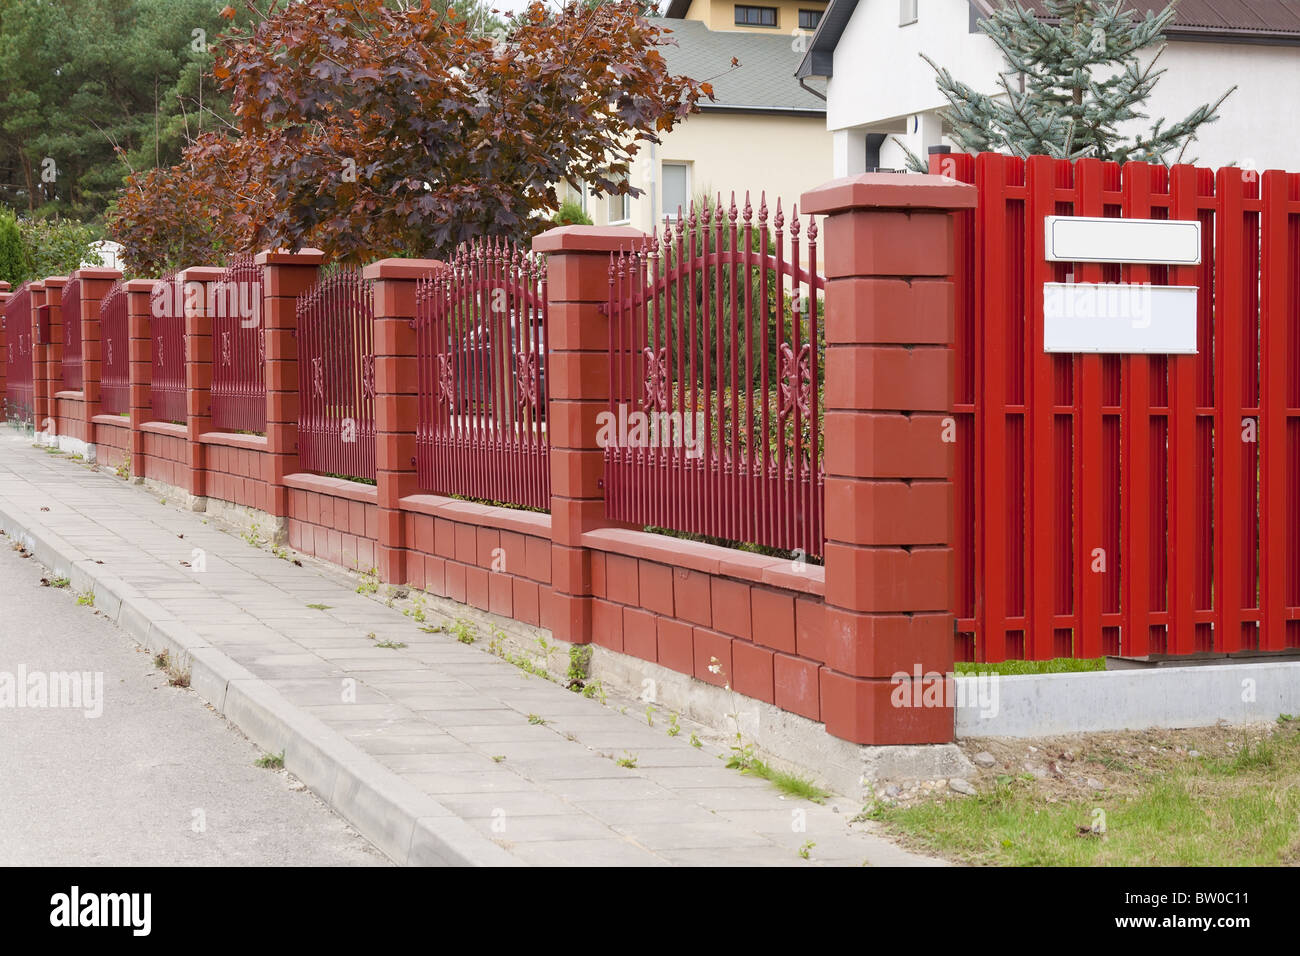 La clôture rouge est situé dans la rue rurale Banque D'Images